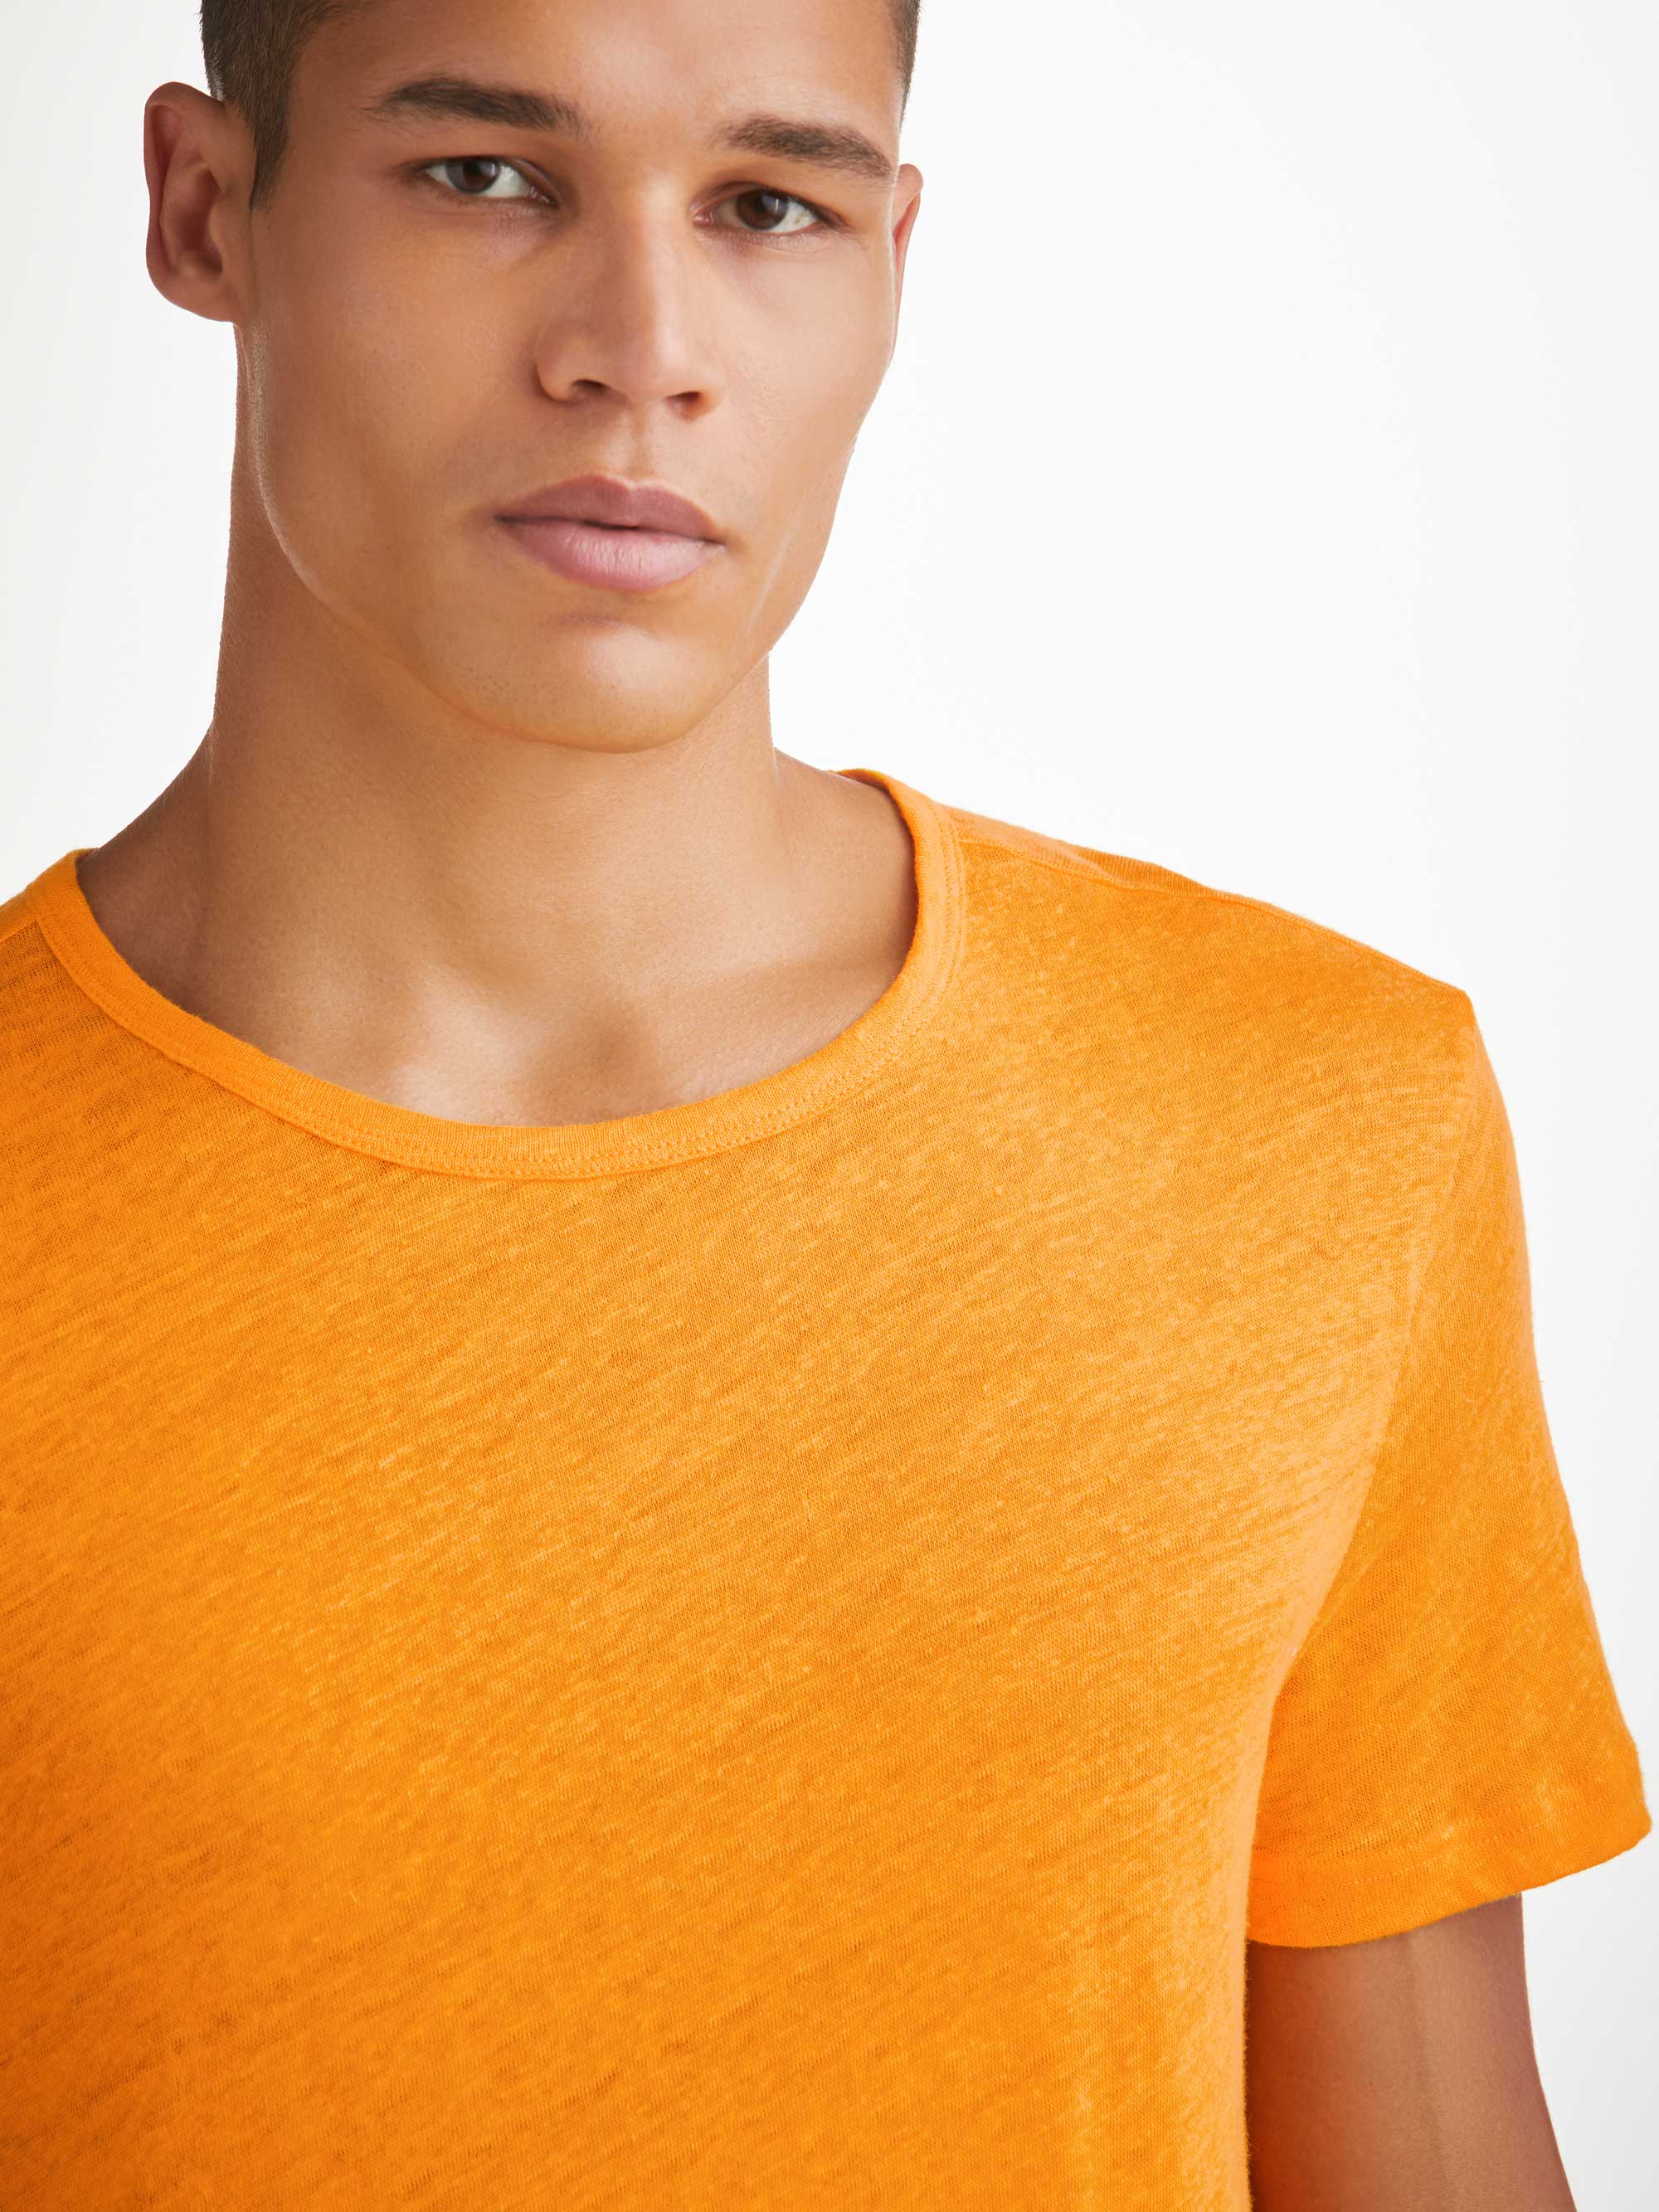 Men's T-Shirt Jordan Linen Tangerine